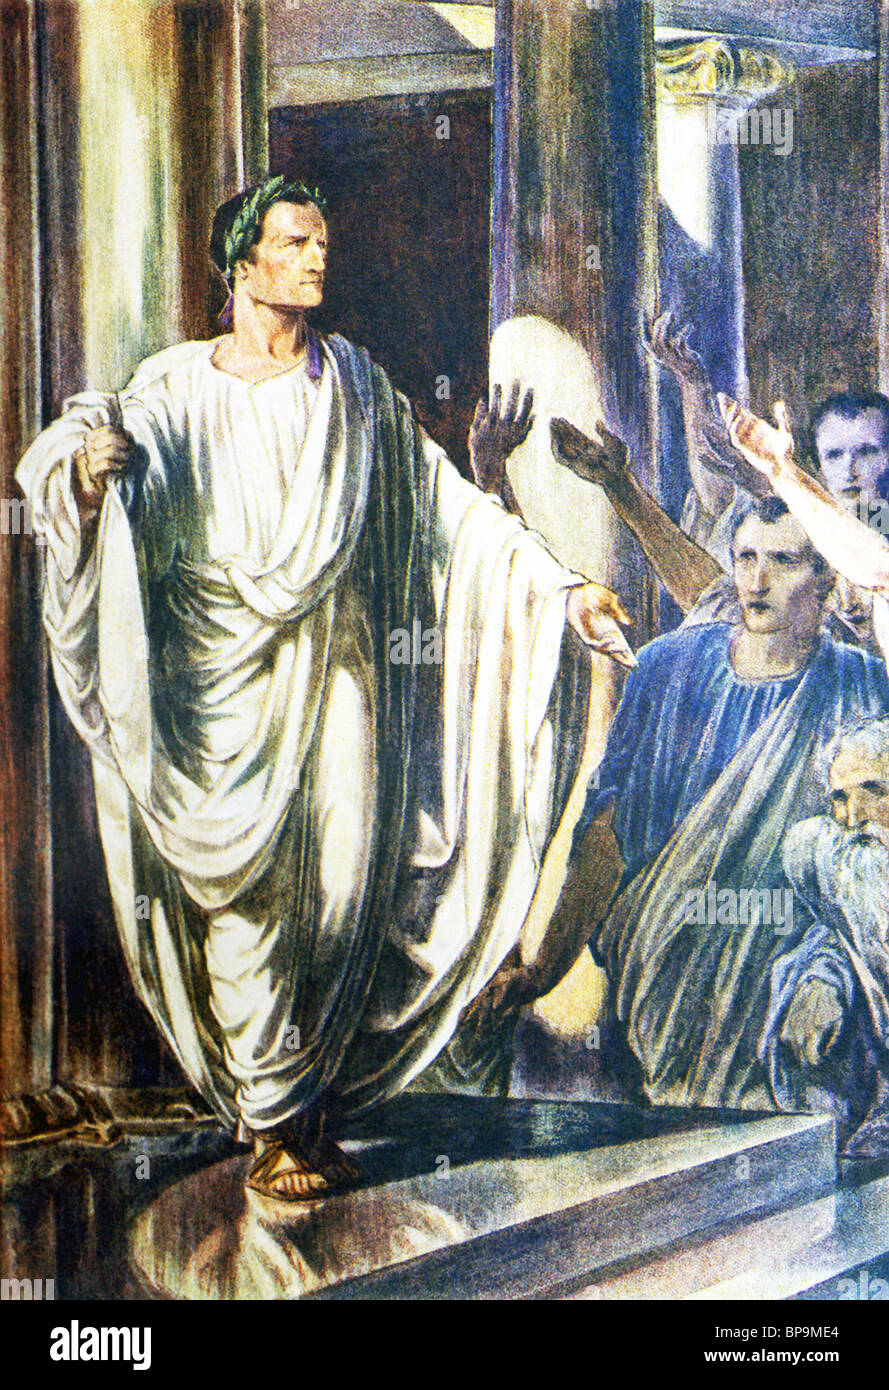 Le général romain et homme d'Fabius Maximus (mort en 203 avant J.-C.) est indiqué sur le sénat Romain. Banque D'Images